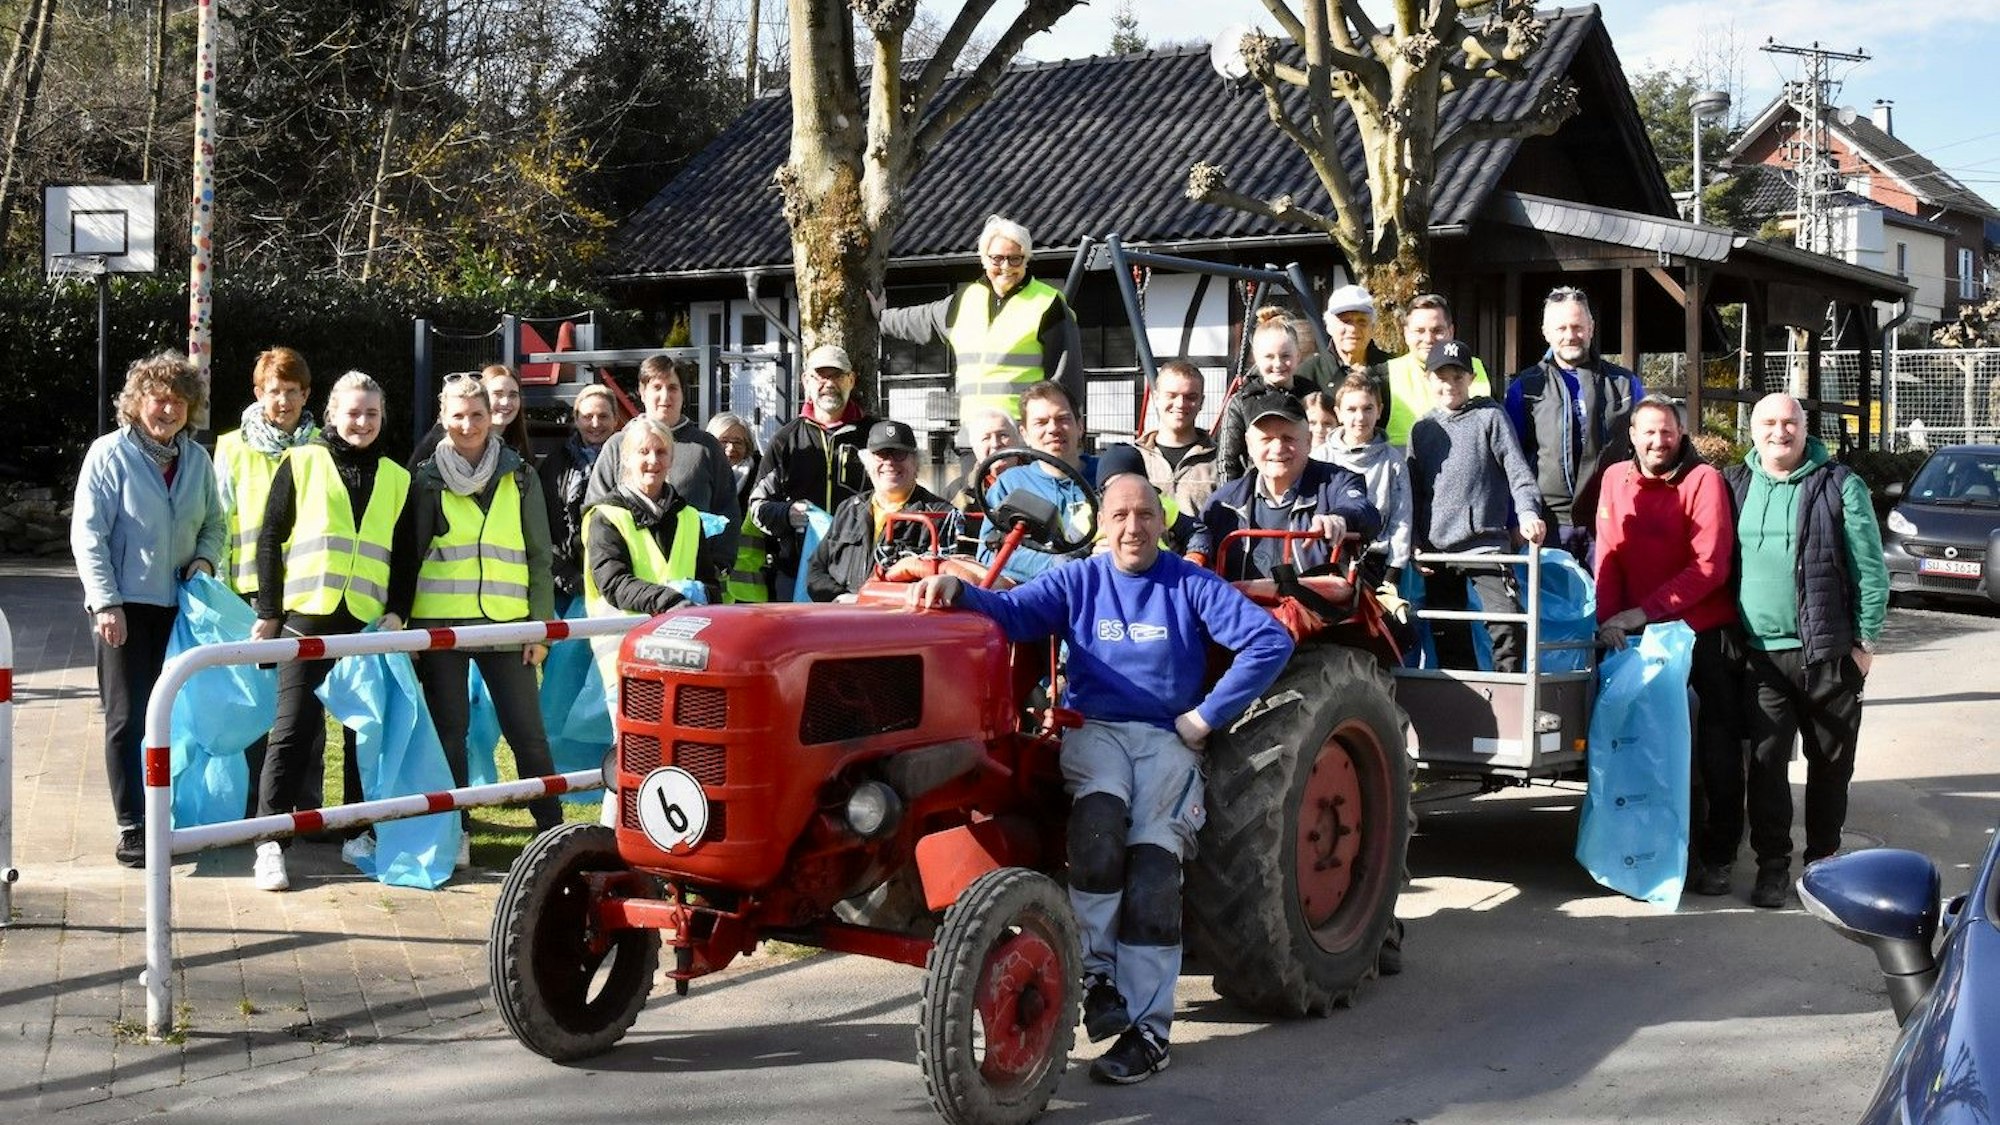 Auch in Neunkirchen-Seelscheid wurde gesammelt und geräumt, im Ortsteil Scherpemich war die Dorfgemeinschaft angetreten: Männer und Frauen stehen mit Müllsäcken hinter einem roten Oldtimer-Traktor.